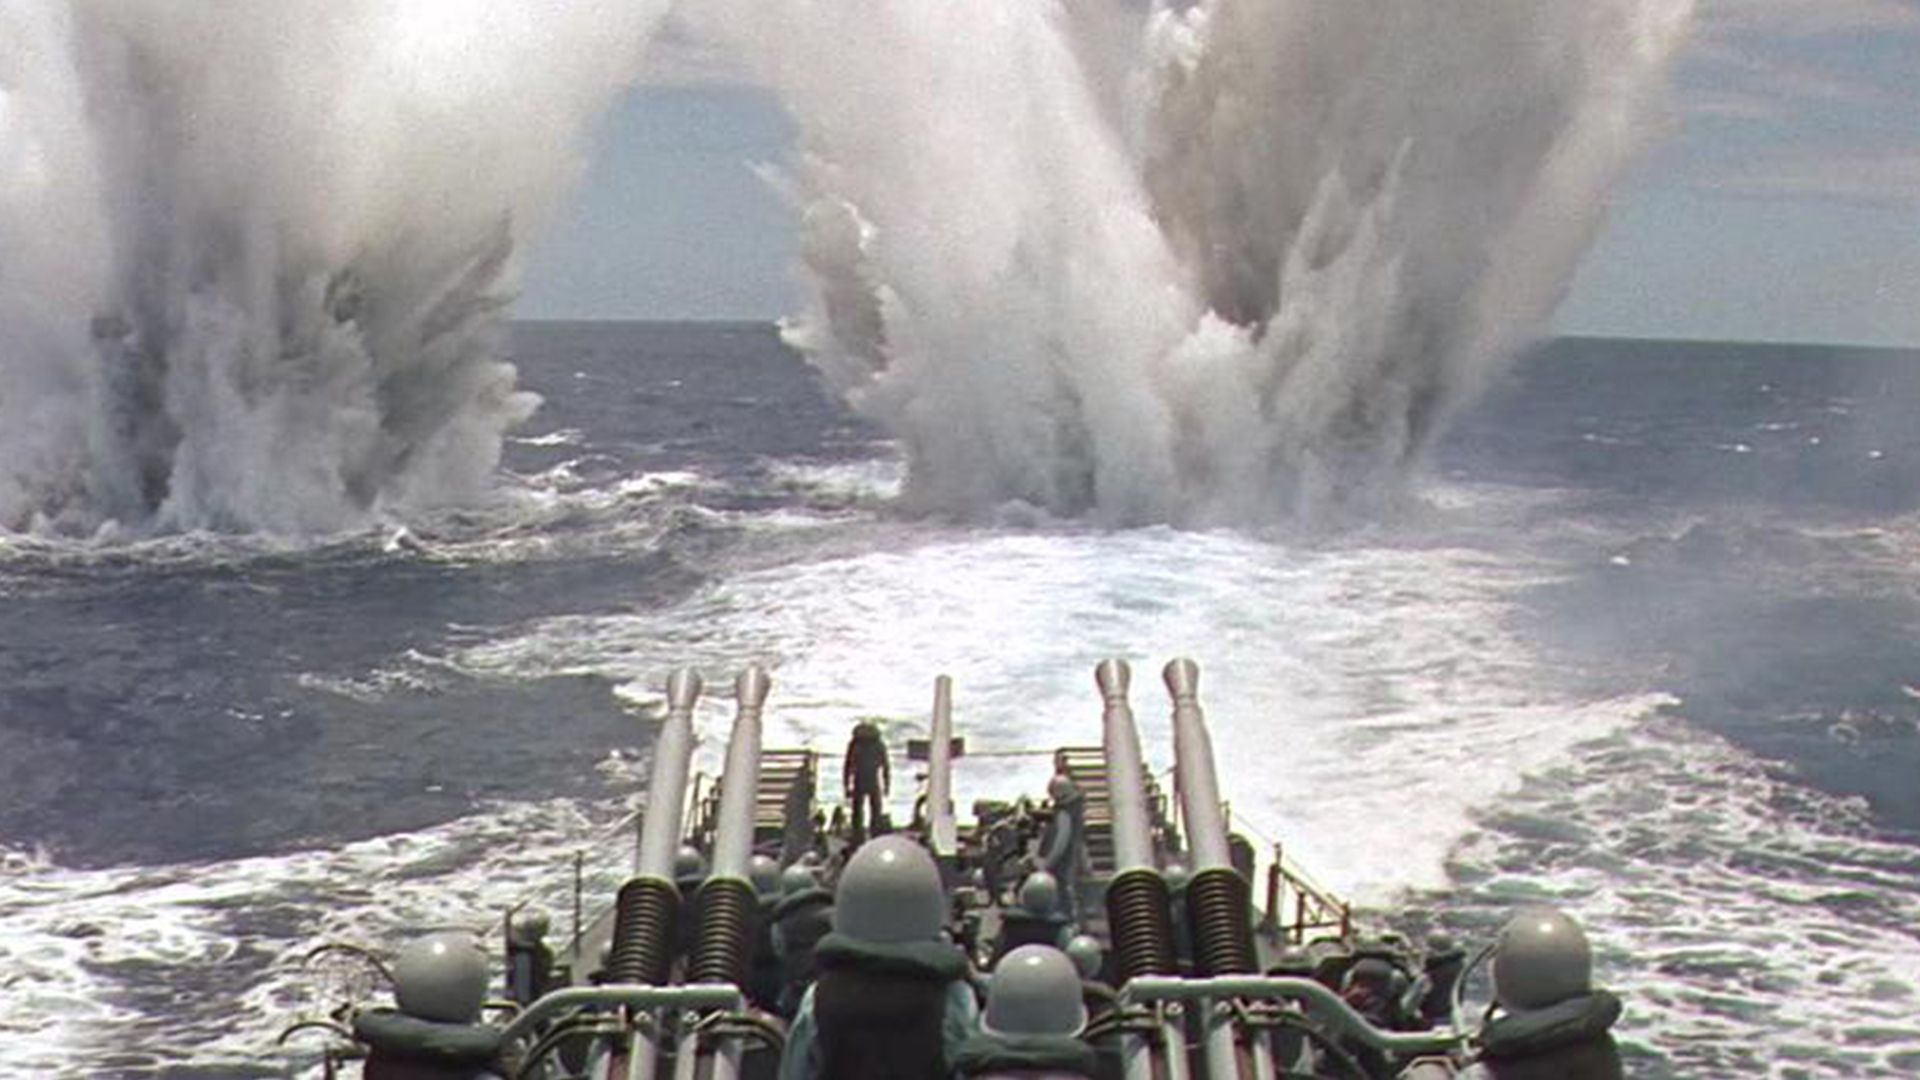 这才叫真正的海战大片，美驱逐舰血战德潜艇，火力全开同归于尽，场面震撼无比